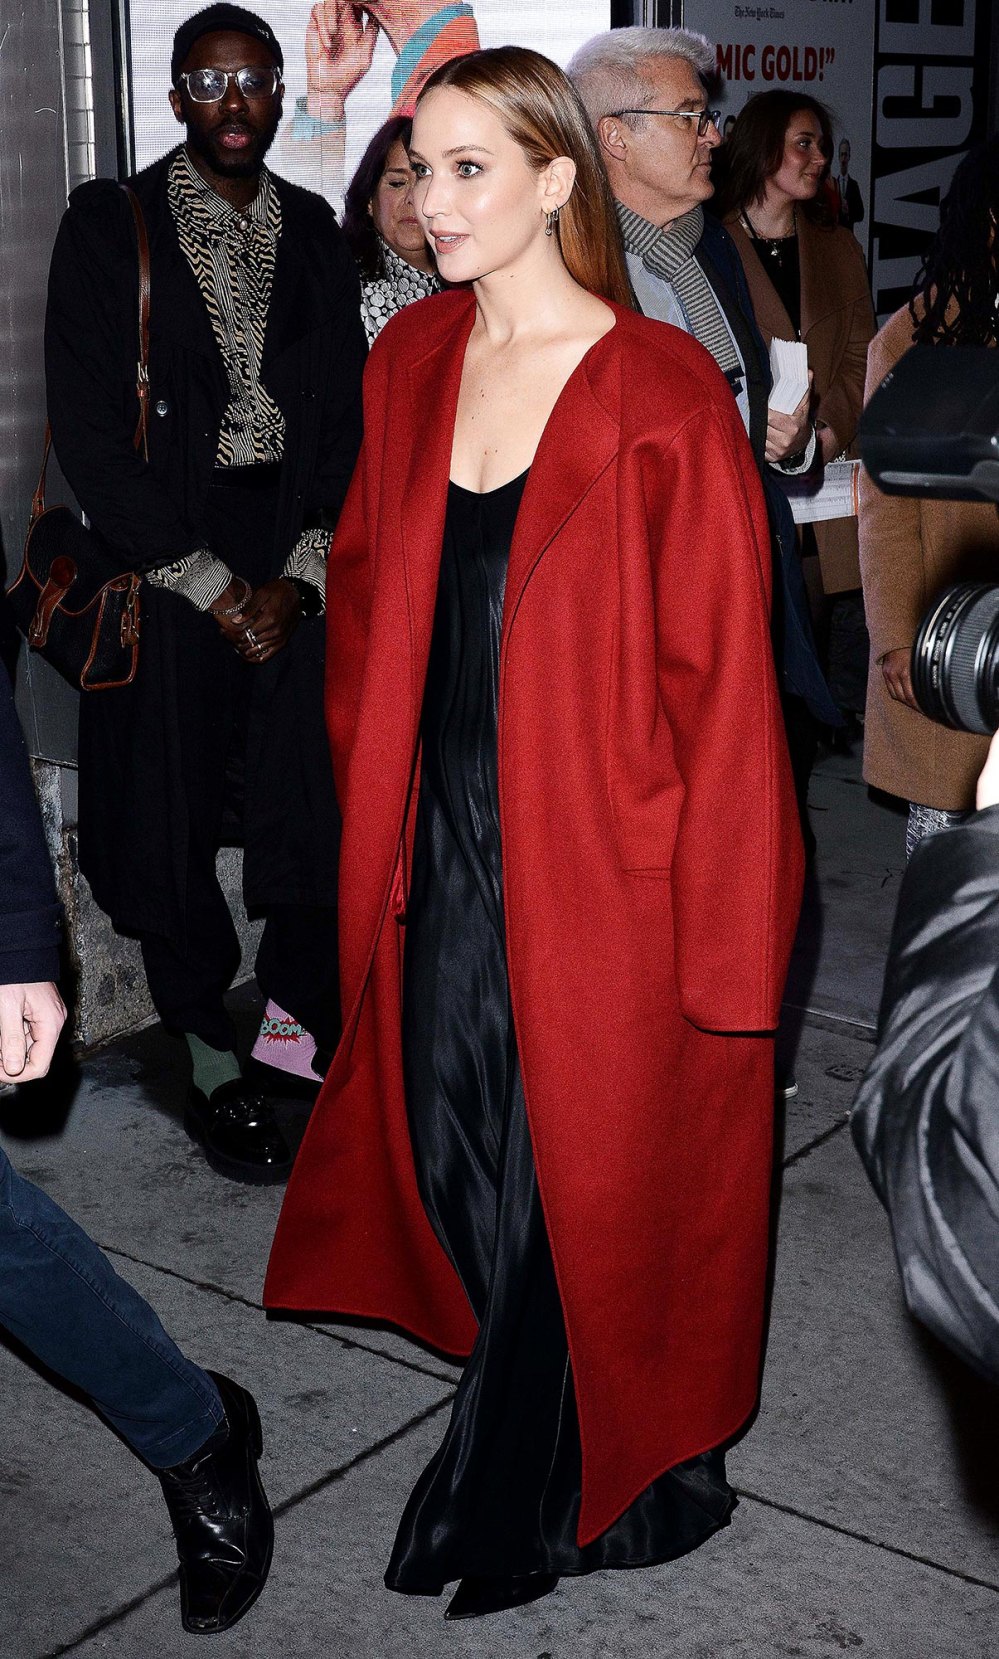 Jennifer Lawrence trägt zur Eröffnungsnacht von Broadways „Appropriate“ einen festlichen roten Farbton auf